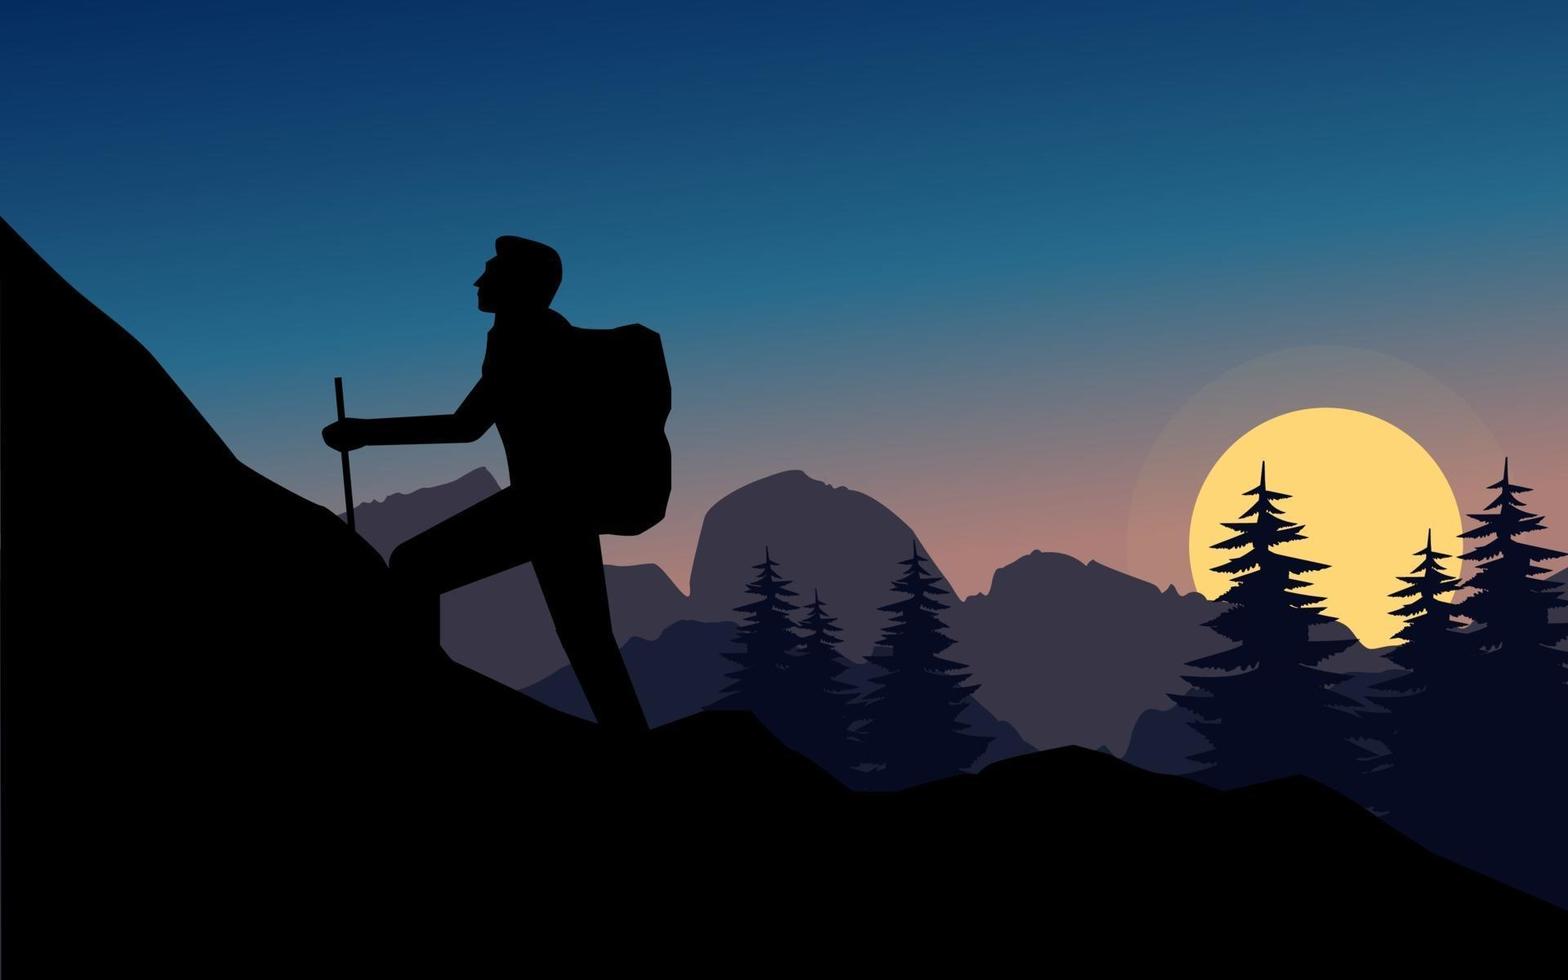 paisaje de la naturaleza en silueta con hombre escalando montaña vector